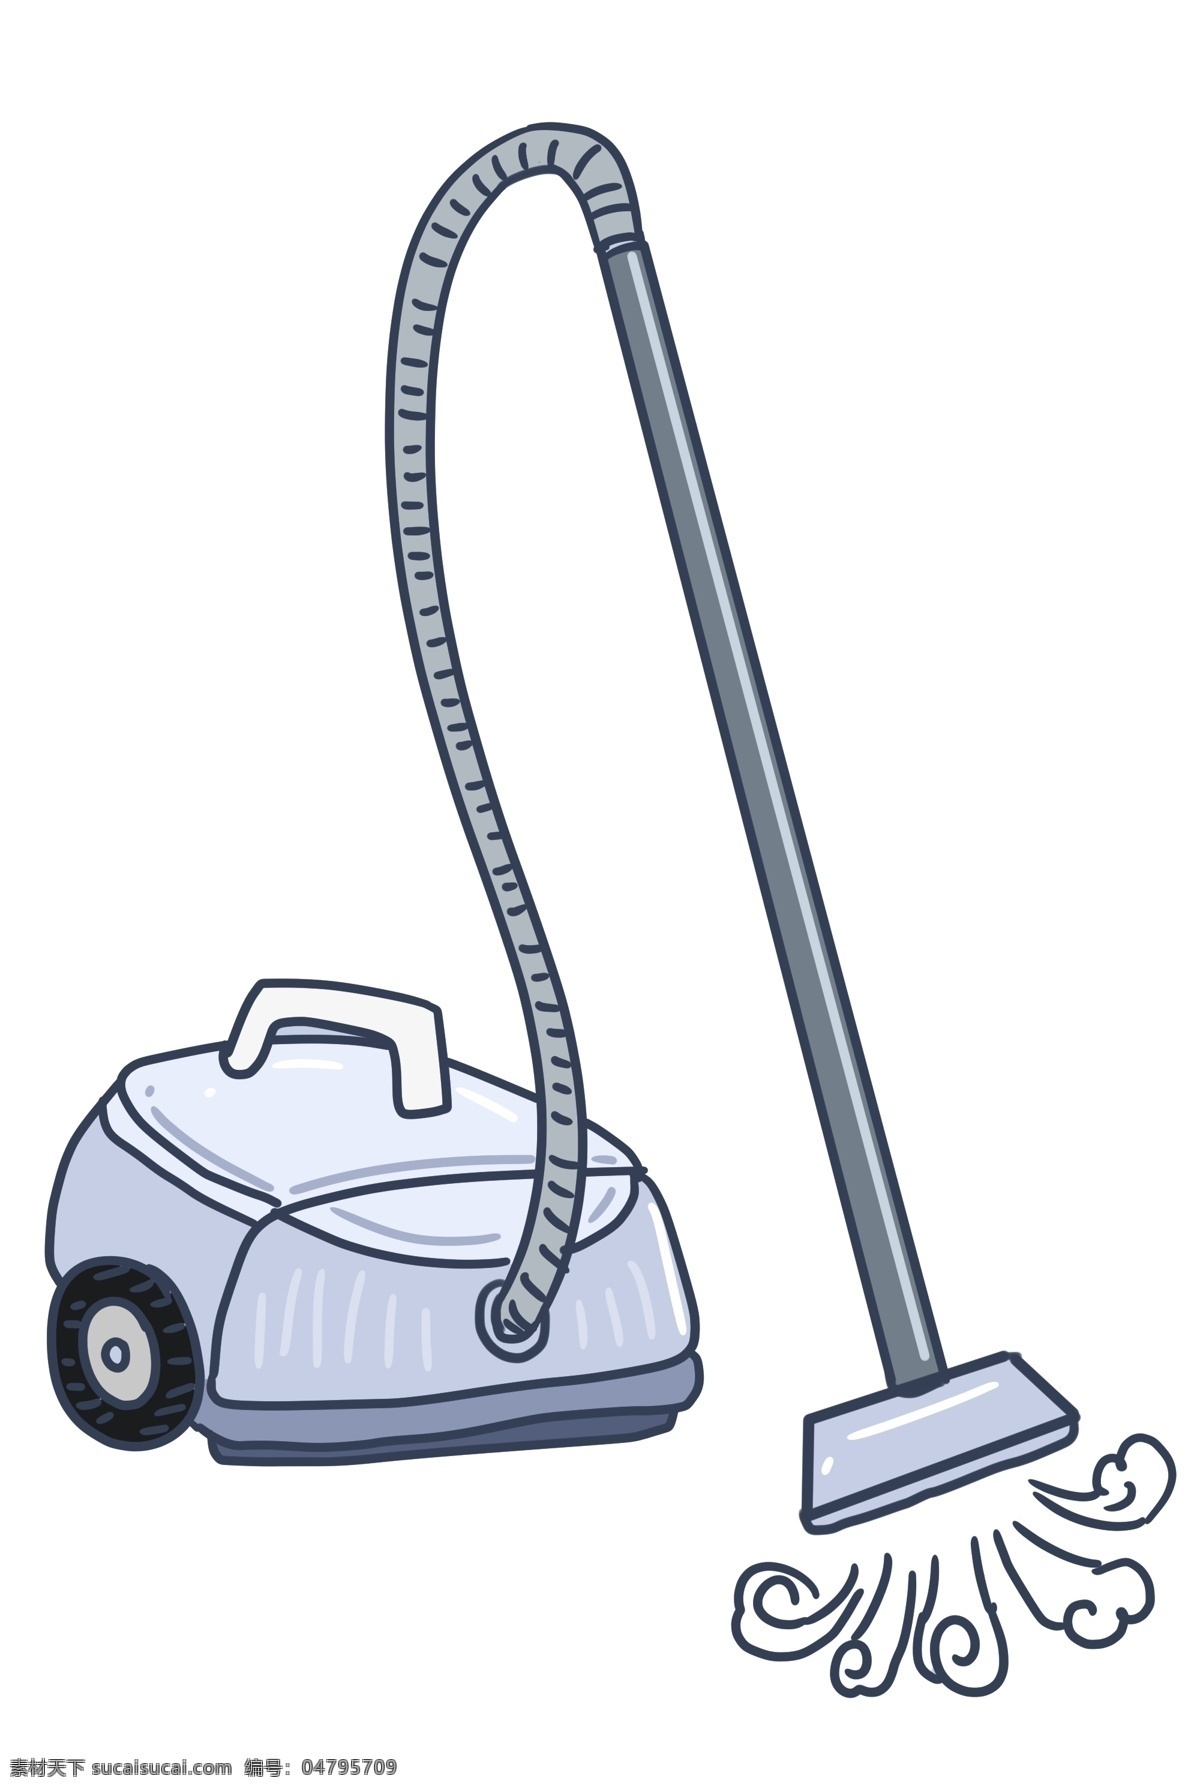 吸尘器 的卡 通 插画 蓝色的吸尘器 世界卫生日 卡通插画 清理工具 清洁 打扫 清扫垃圾 吸尘器插画